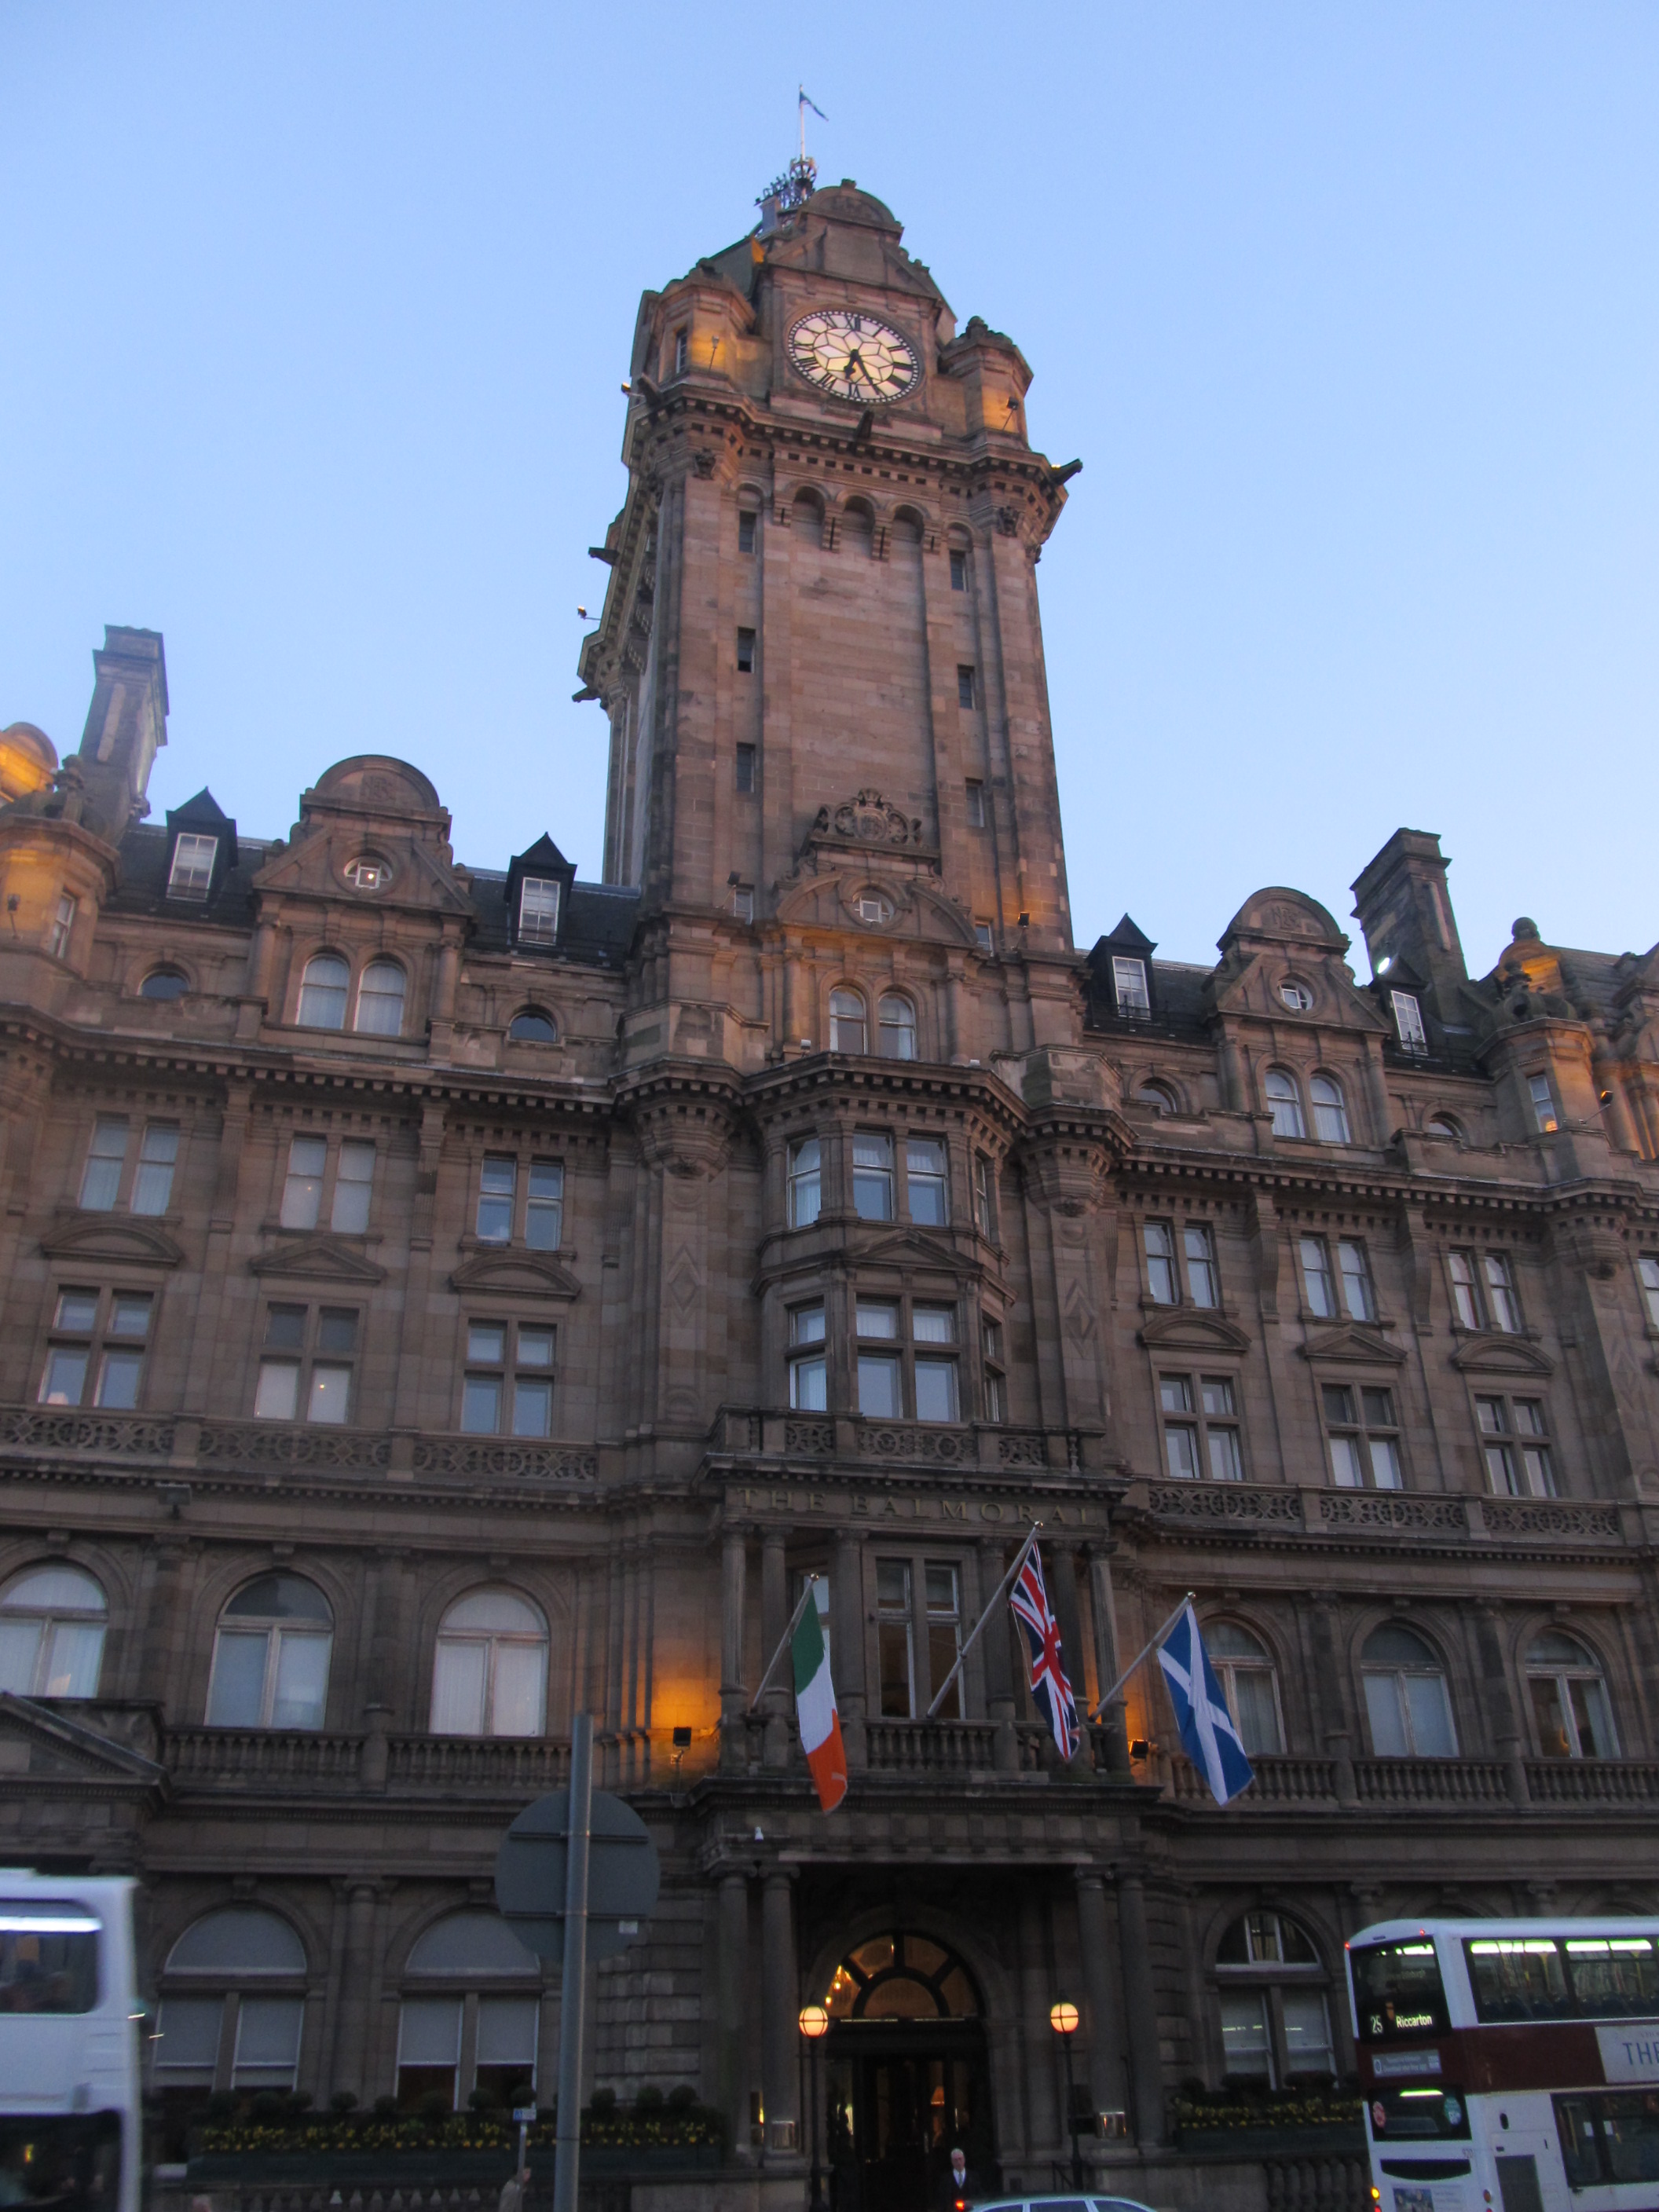 The Barmoral Hotel in Edinburgh